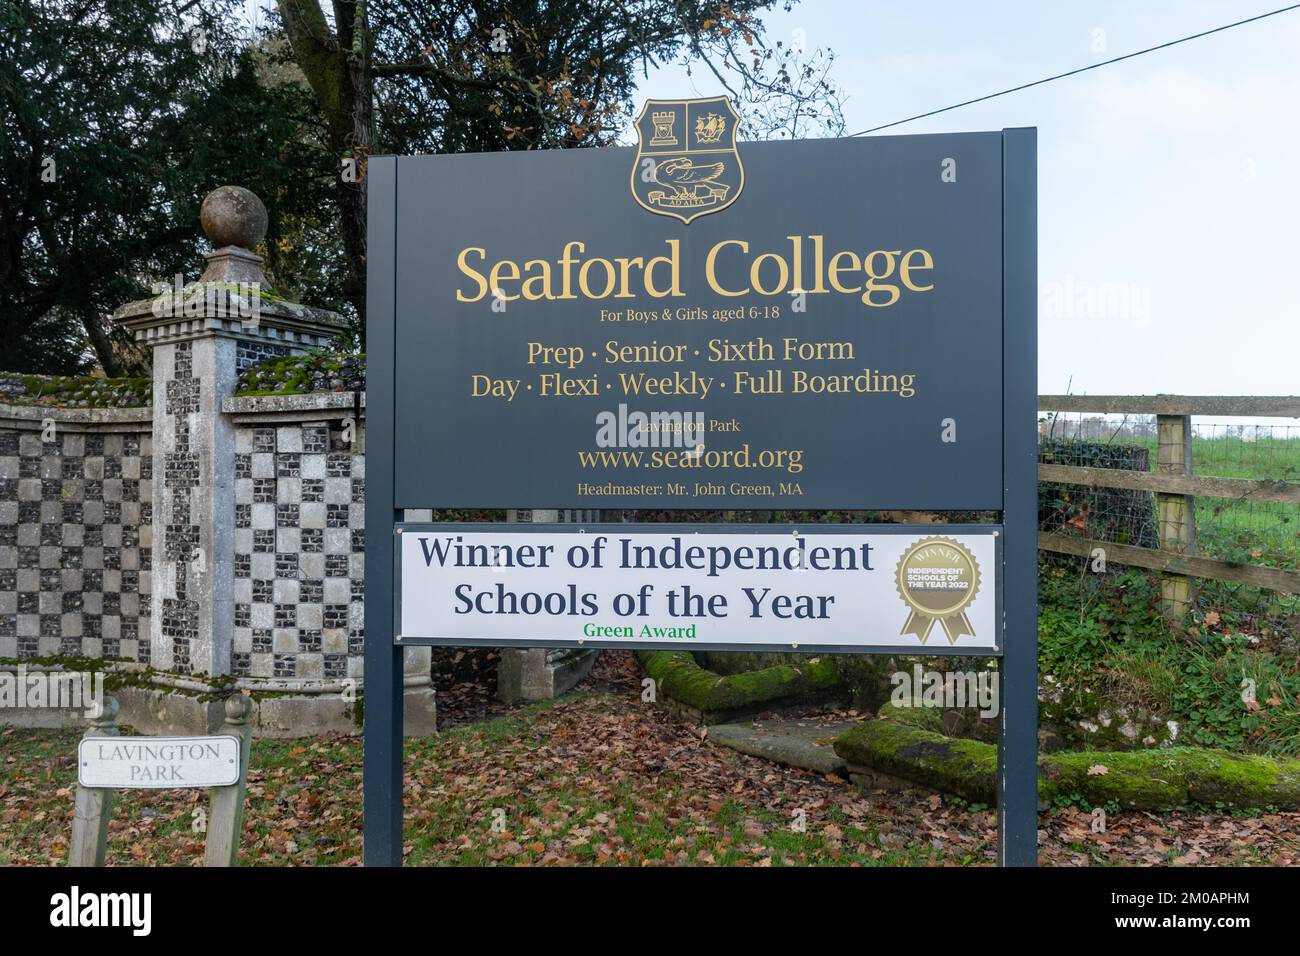 Seaford College, un pensionnat et une école de jour indépendants à East Lavington près de Petworth, West Sussex, Angleterre, Royaume-Uni Banque D'Images